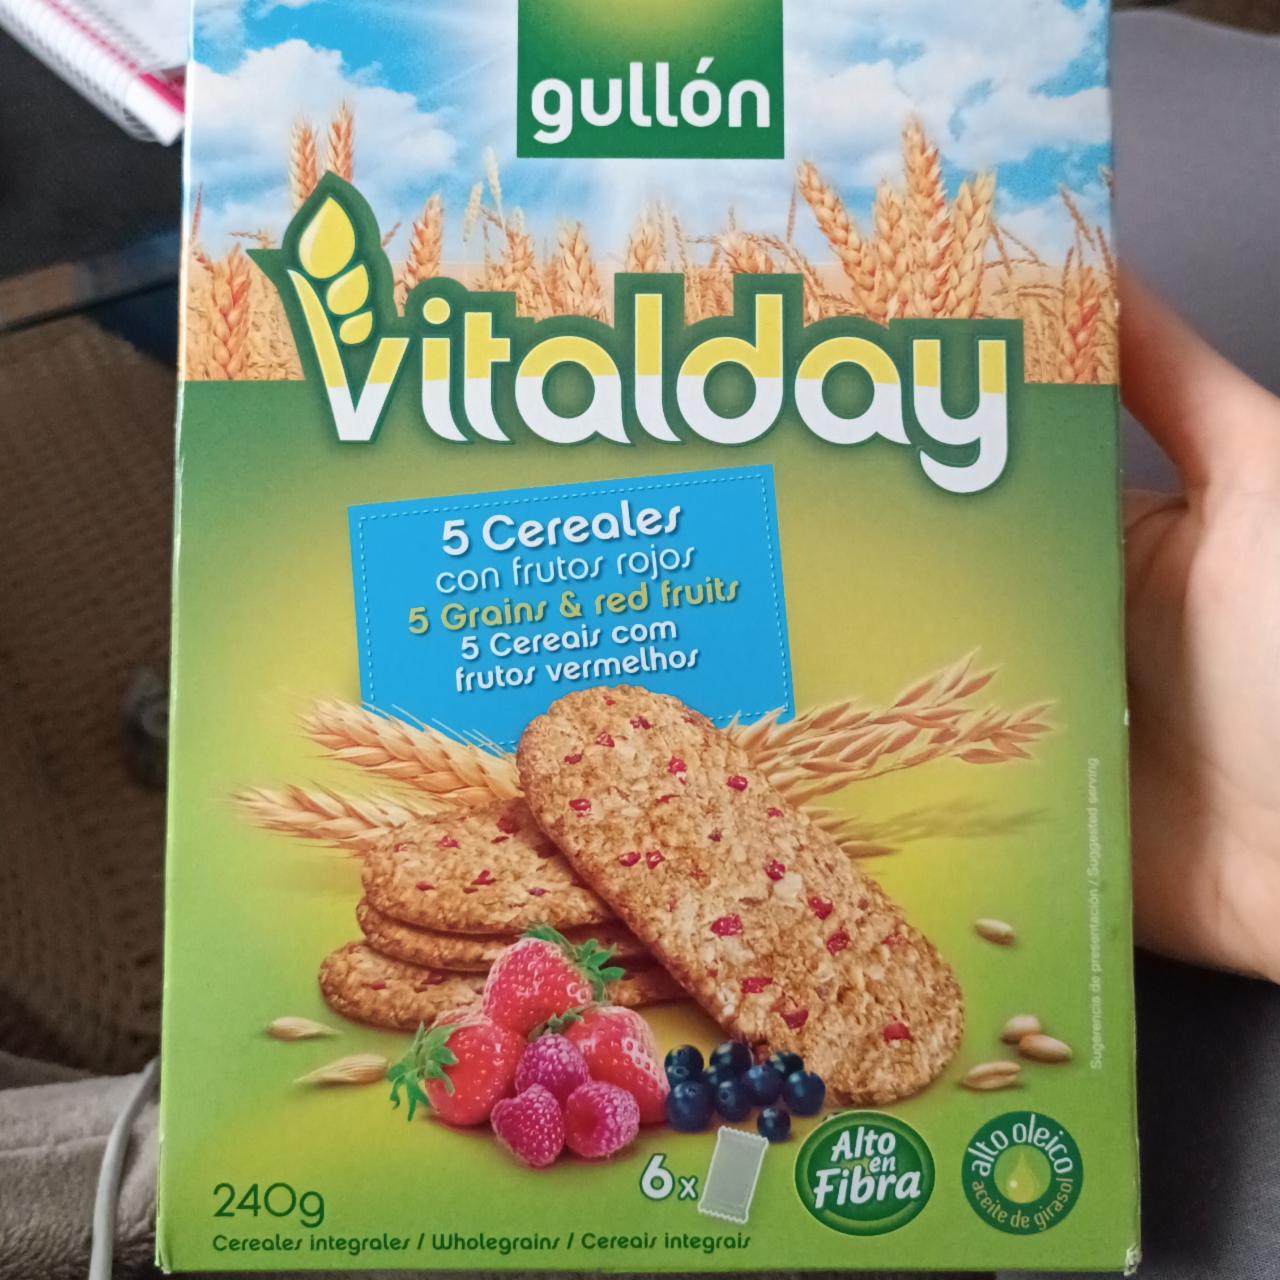 Фото - Печенье злаковое с ягодами Vitalday Gullon